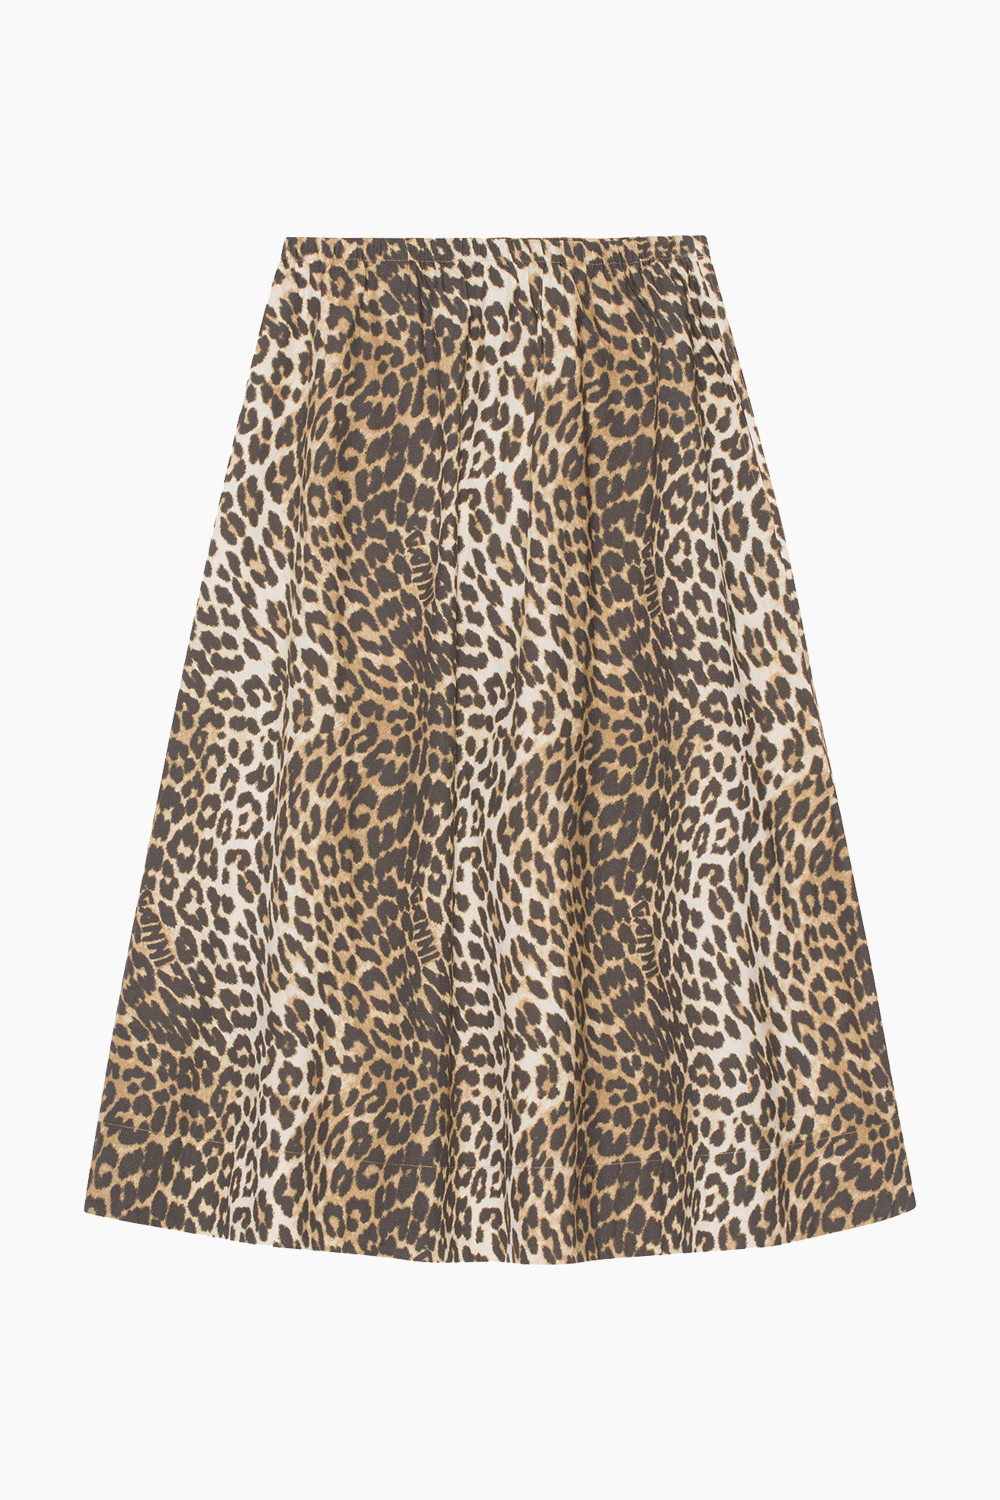 Printed Cotton Elasticated Maxi Skirt - Big Almond Milk GANNI - Leopard - Shirts - dametøj - toej.dk